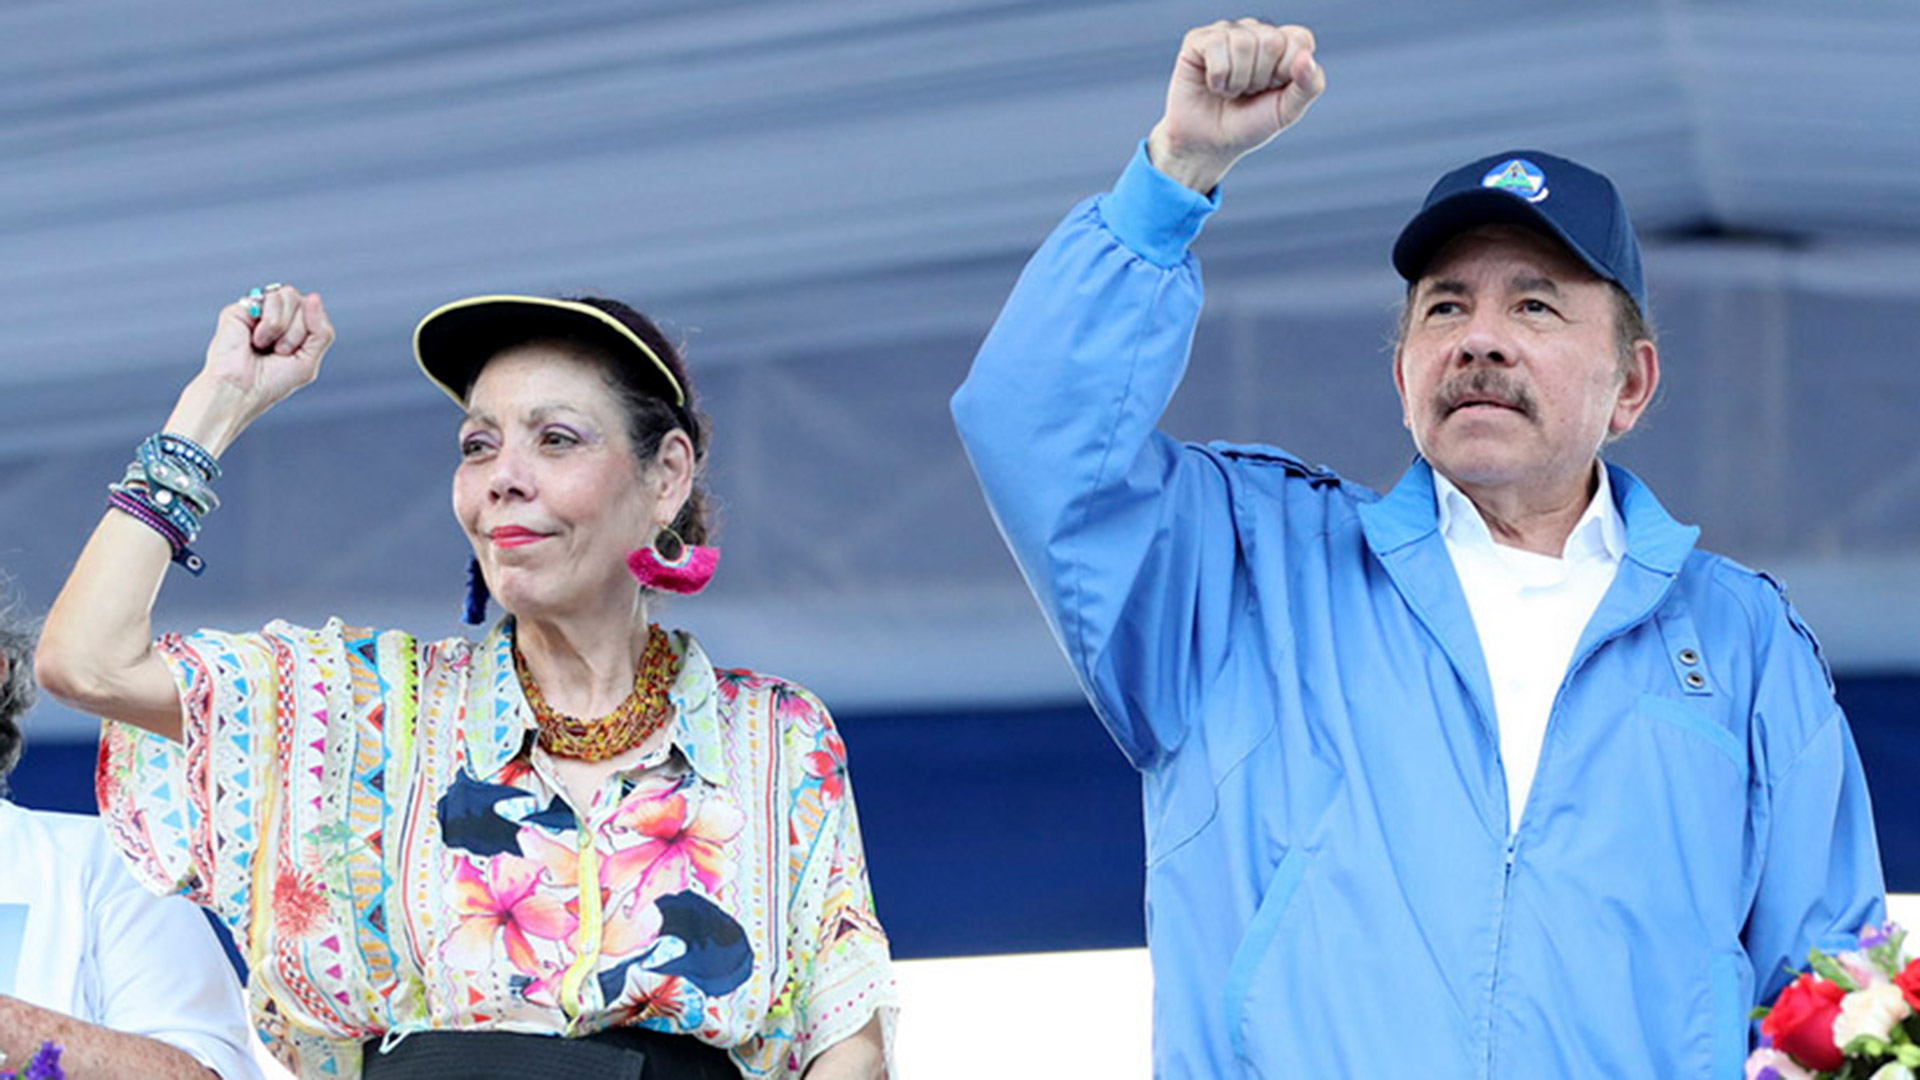 La familia de Daniel Ortega y Rosario Murillo maneja el monopolio de los combustibles en Nicaragua, según los especialistas. (Foto 19 Digital)